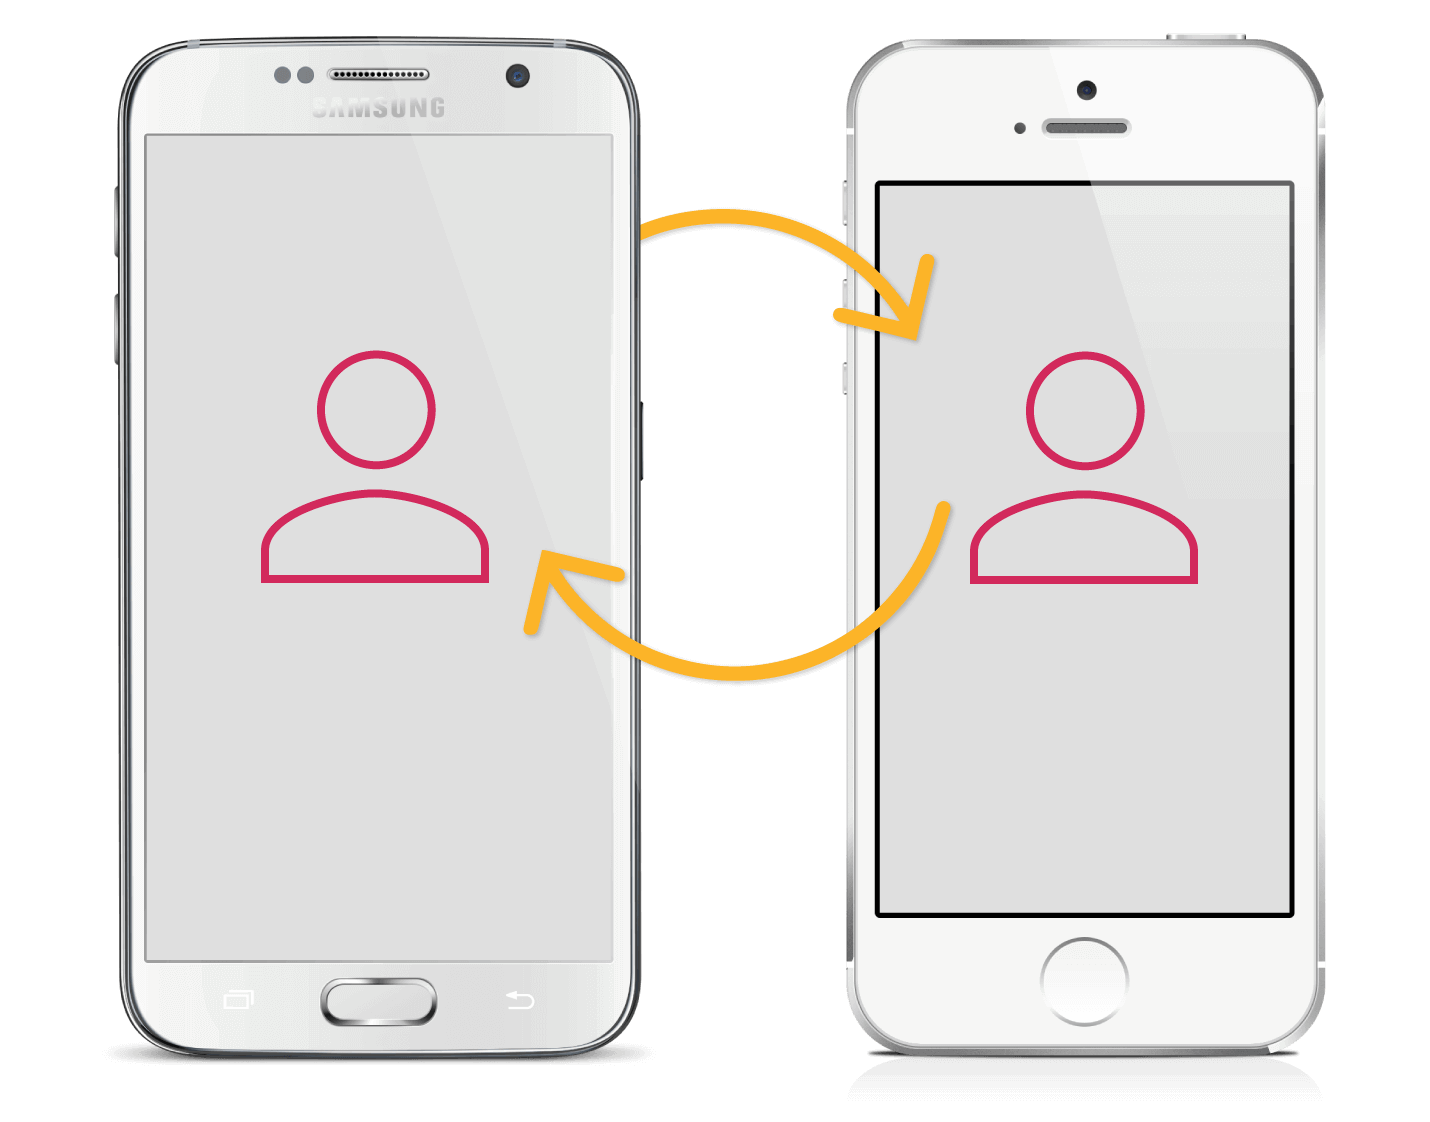 Synchronisieren Sie iPhone-Kontakte mit Android